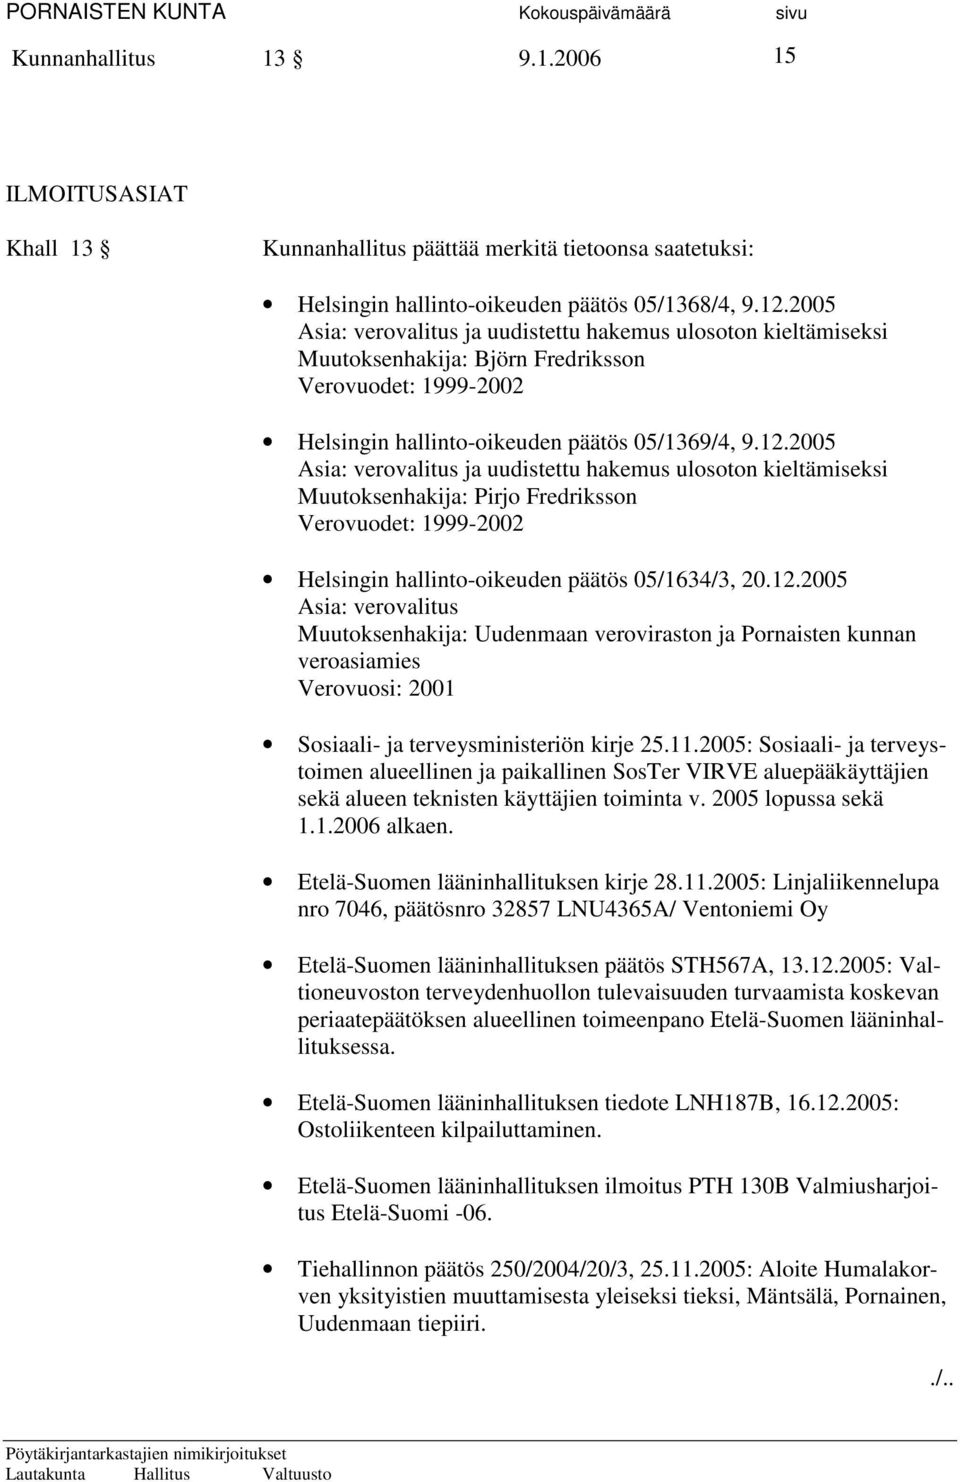 2005 Asia: verovalitus ja uudistettu hakemus ulosoton kieltämiseksi Muutoksenhakija: Pirjo Fredriksson Verovuodet: 1999-2002 Helsingin hallinto-oikeuden päätös 05/1634/3, 20.12.